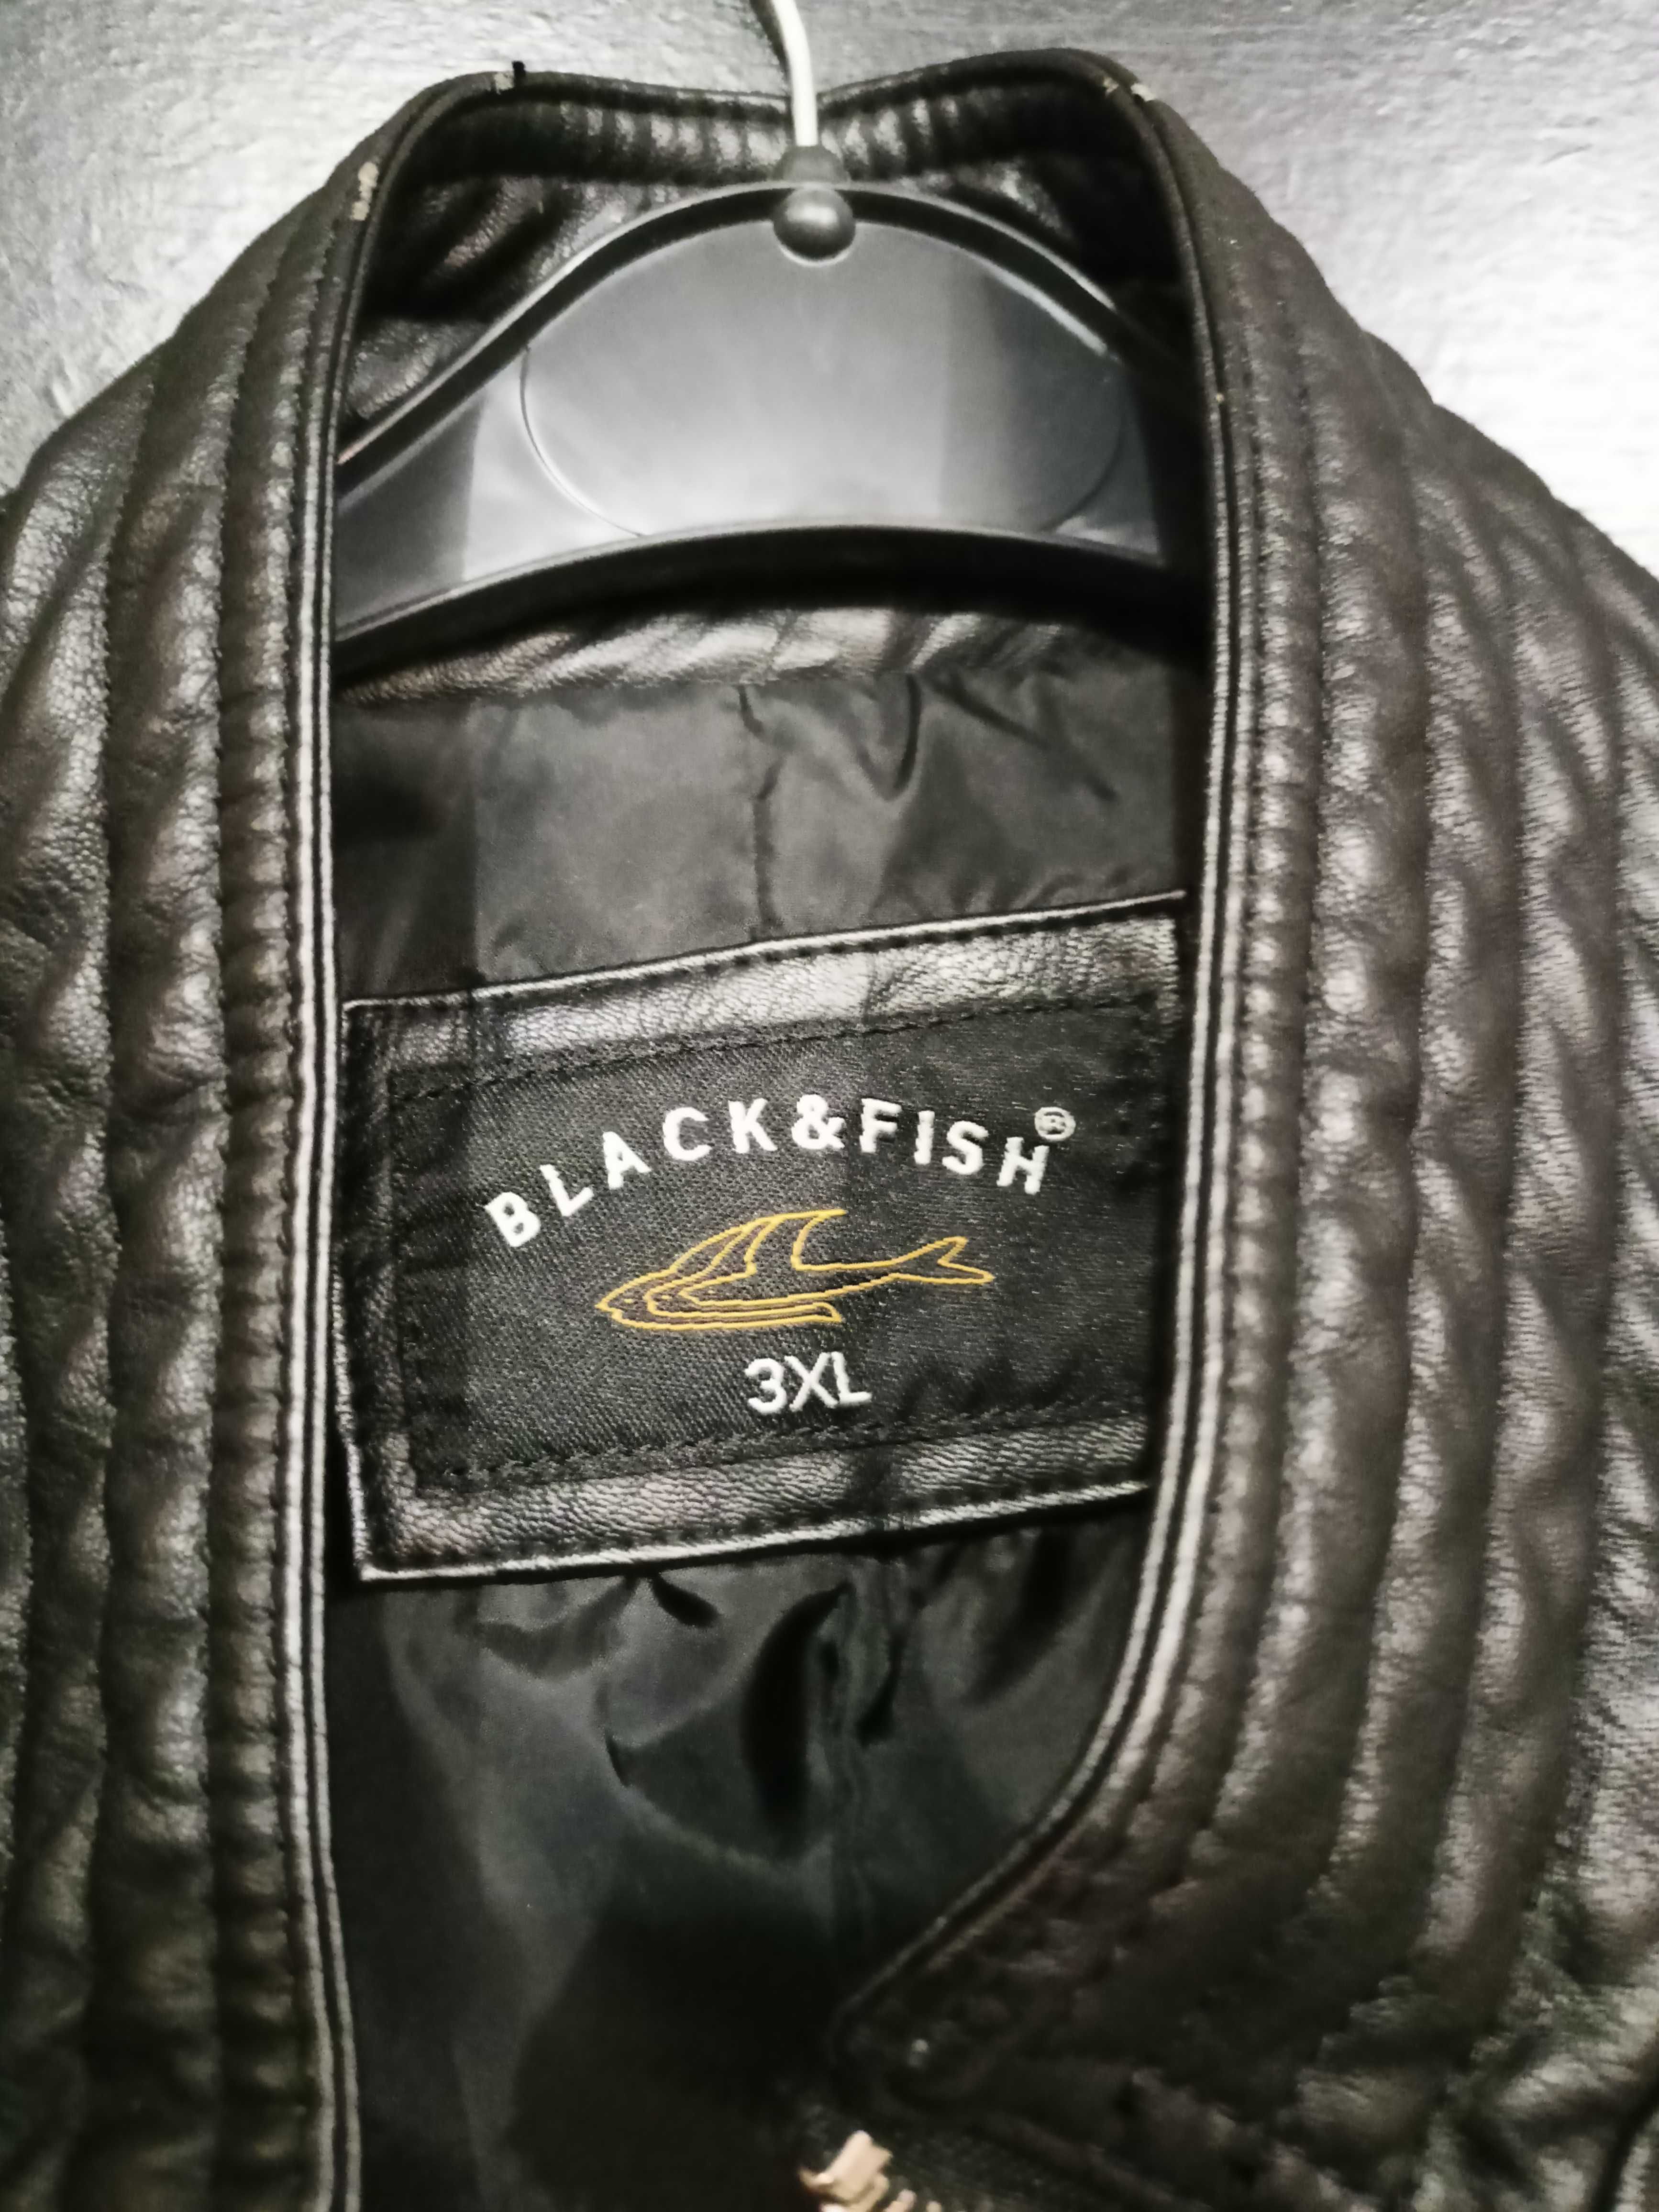 Kurtka ramoneska "Black & Fish", rozmiar 3XL